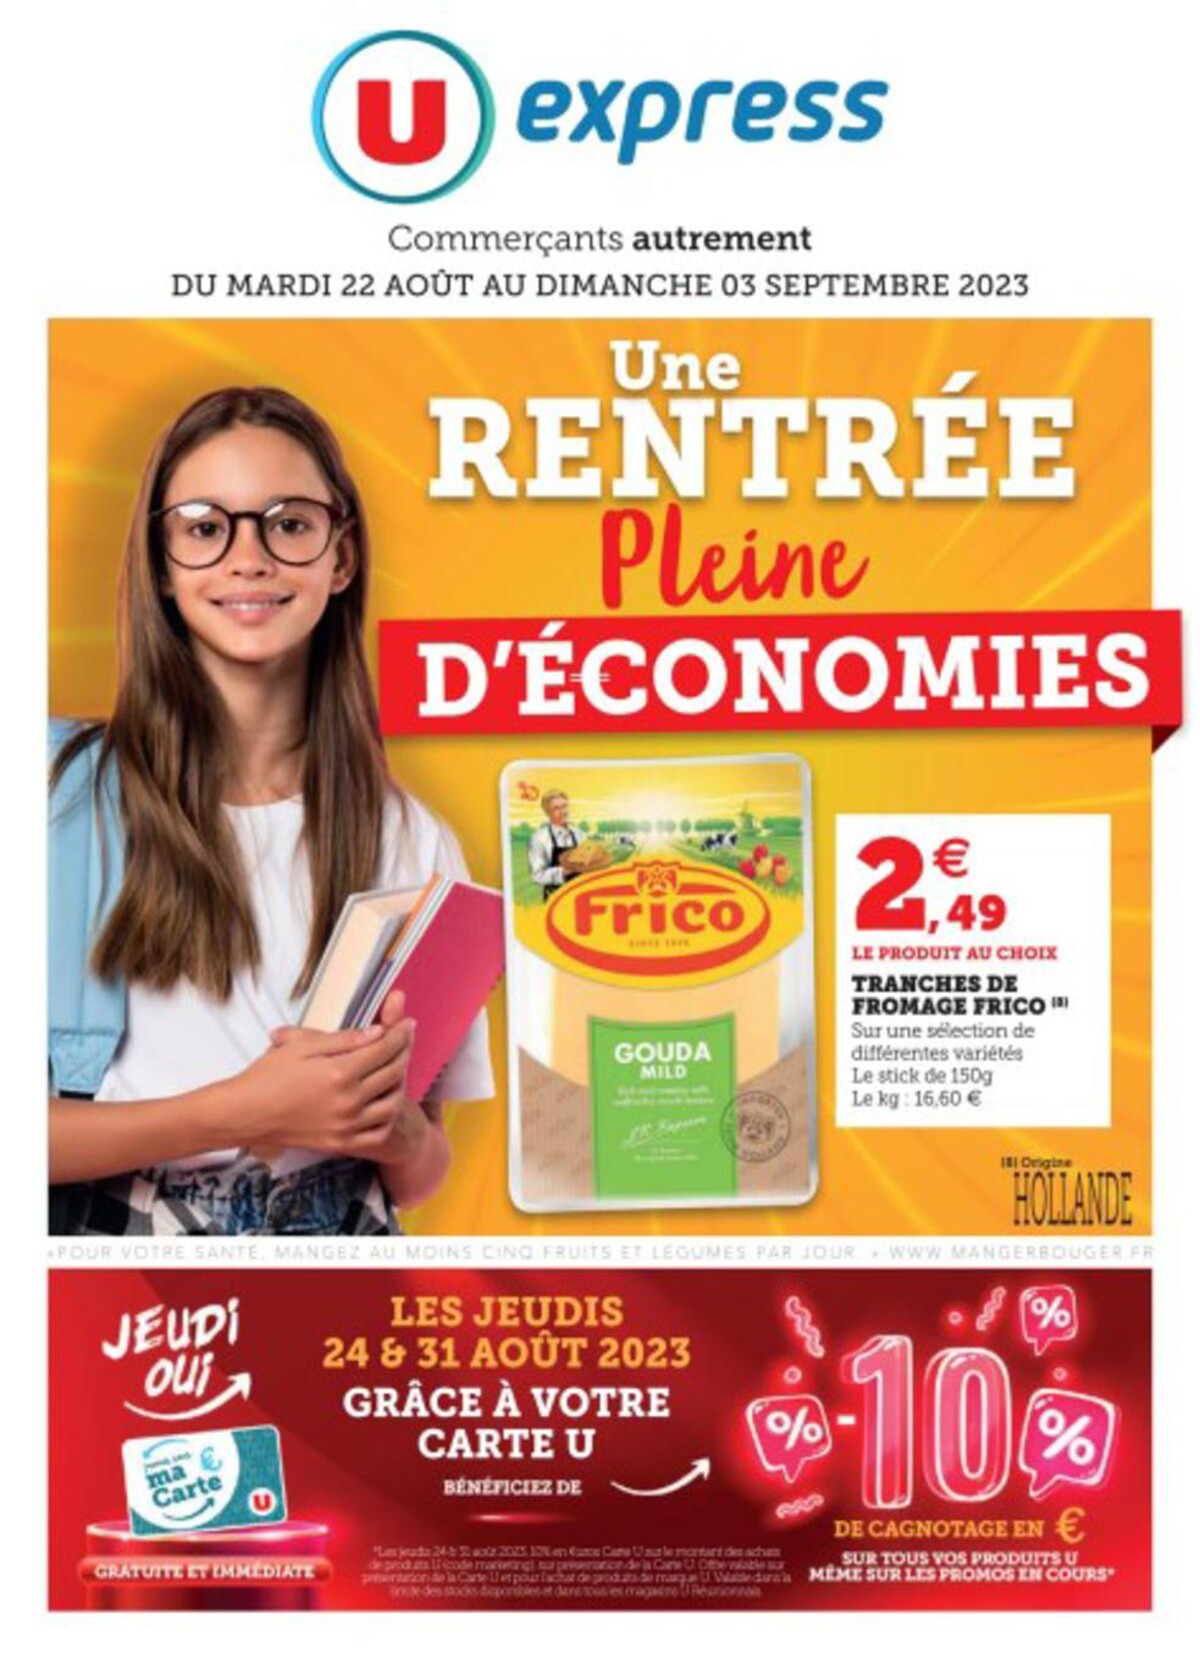 Catalogue UN RENTREE Pleine d'economies., page 00001